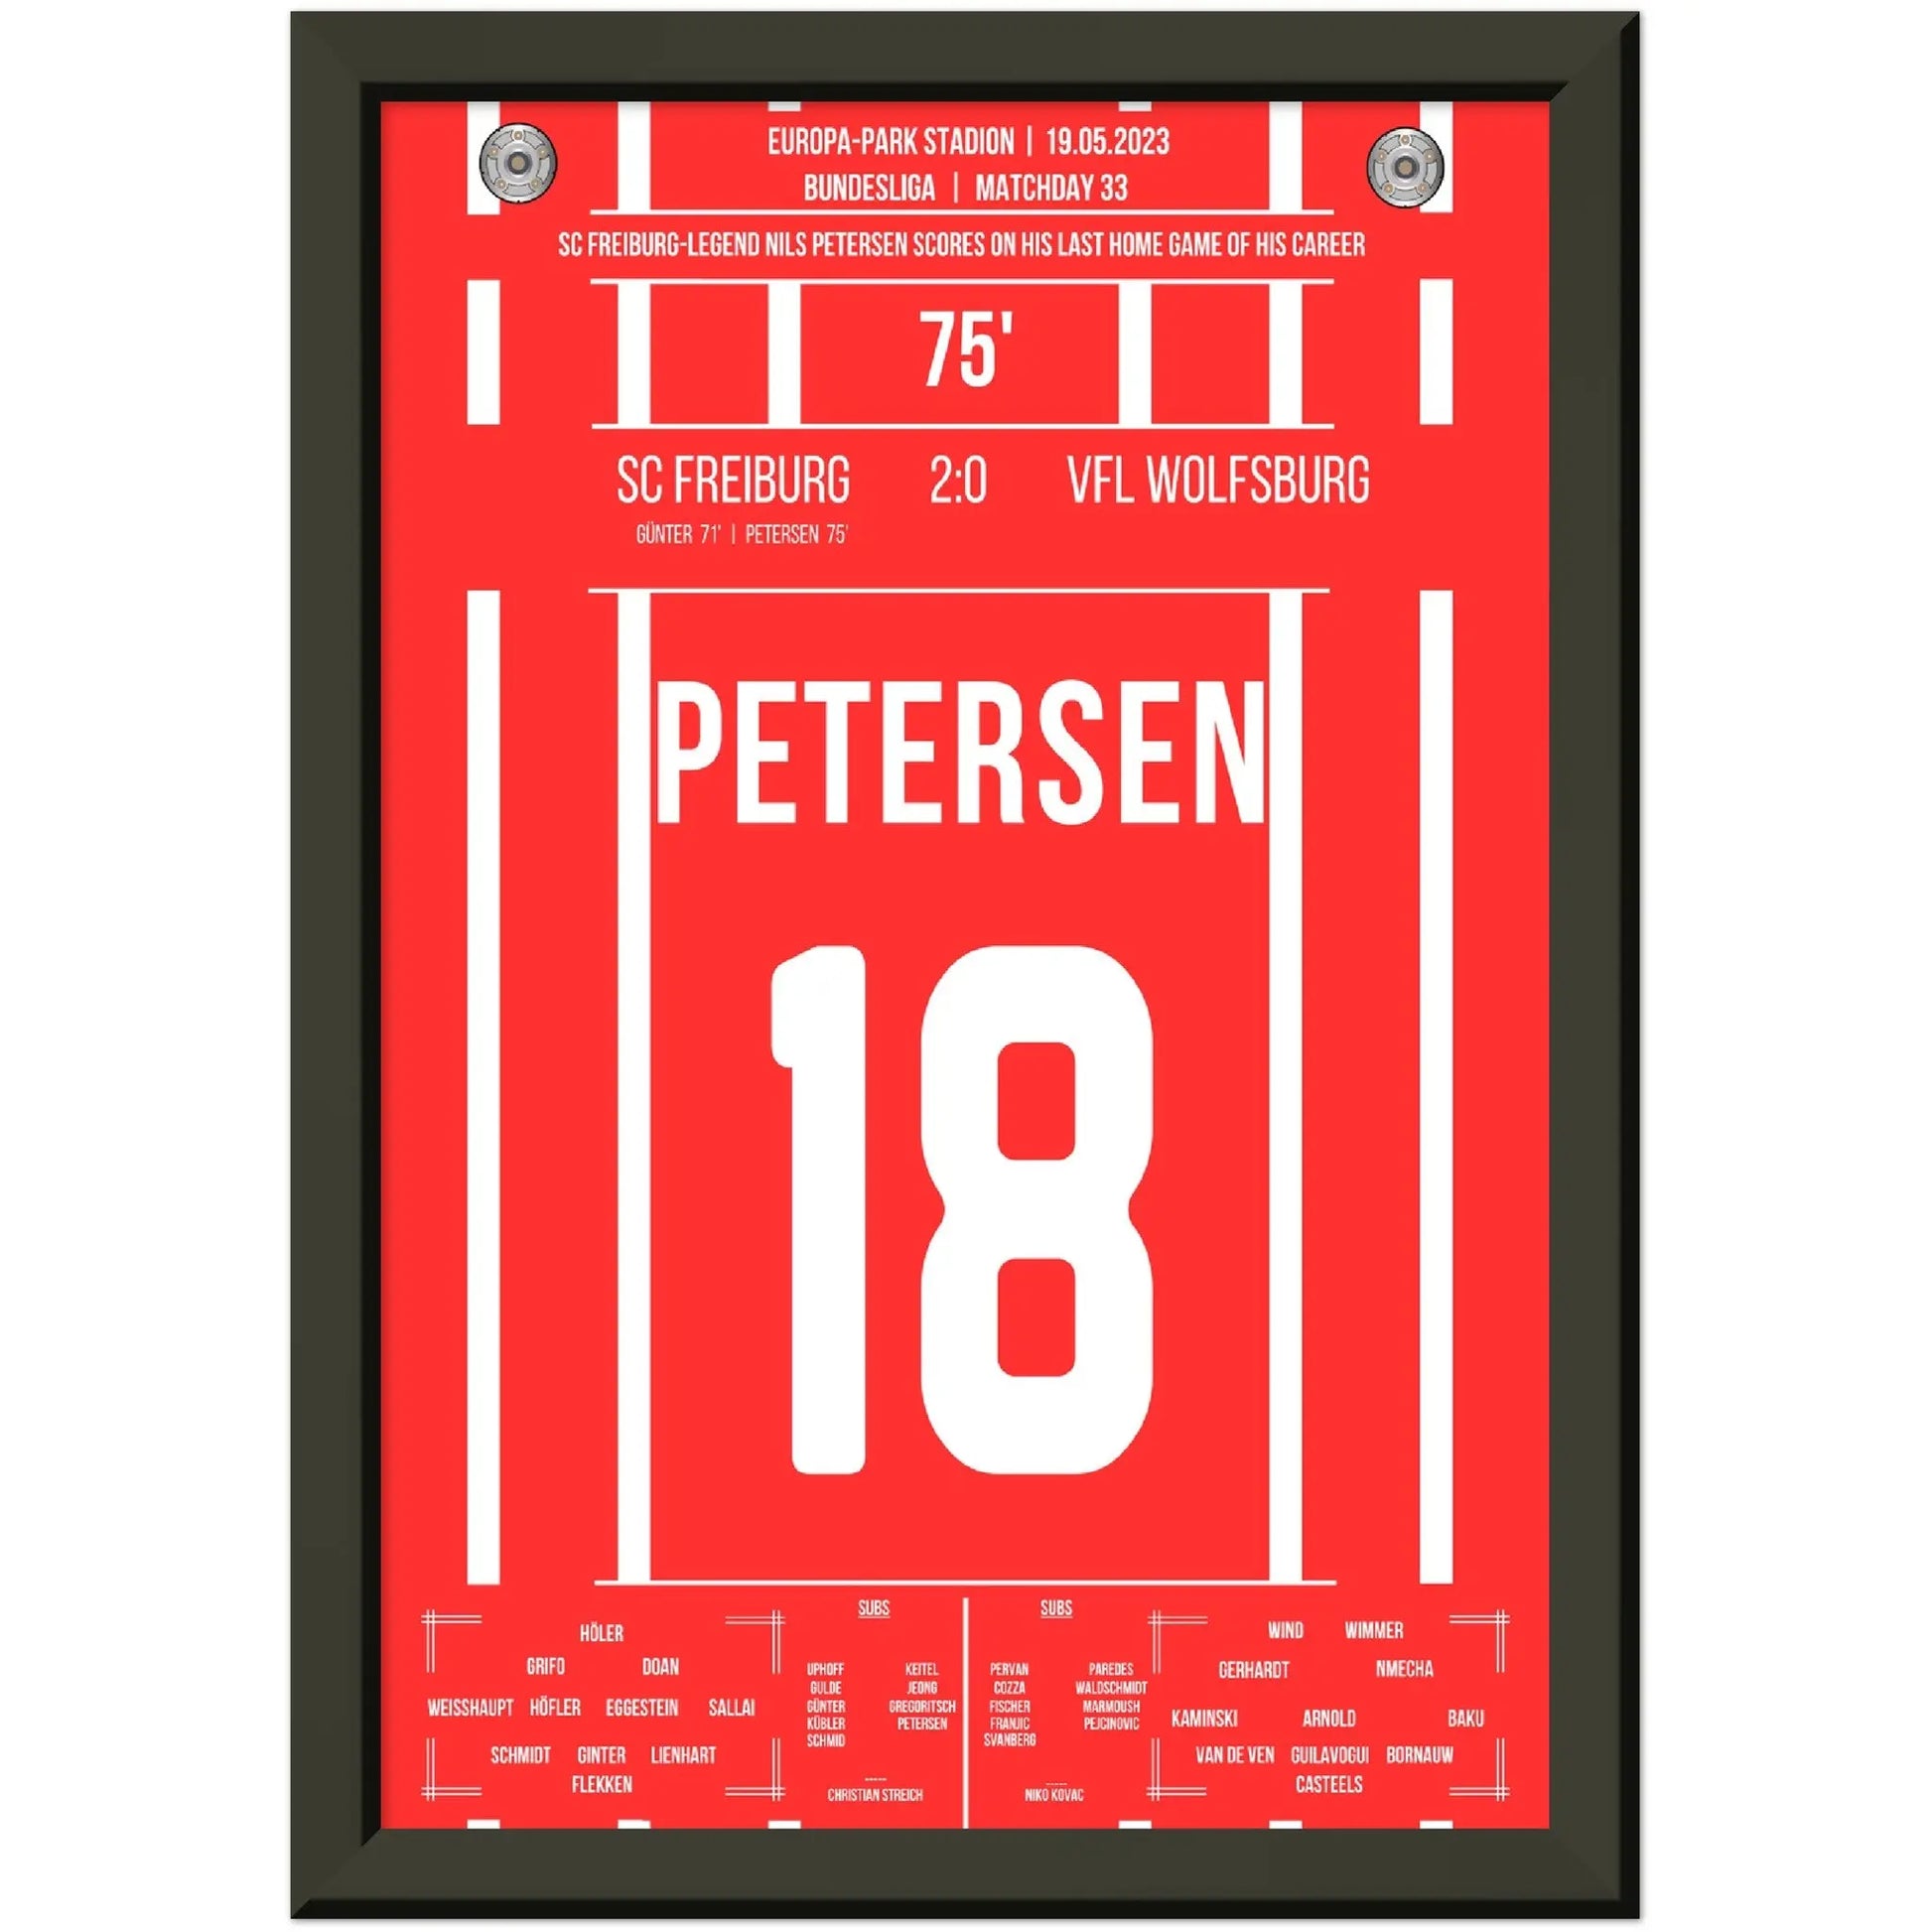 Petersens perfekter Abschied - Treffer im letzten Heimspiel für Freiburg 